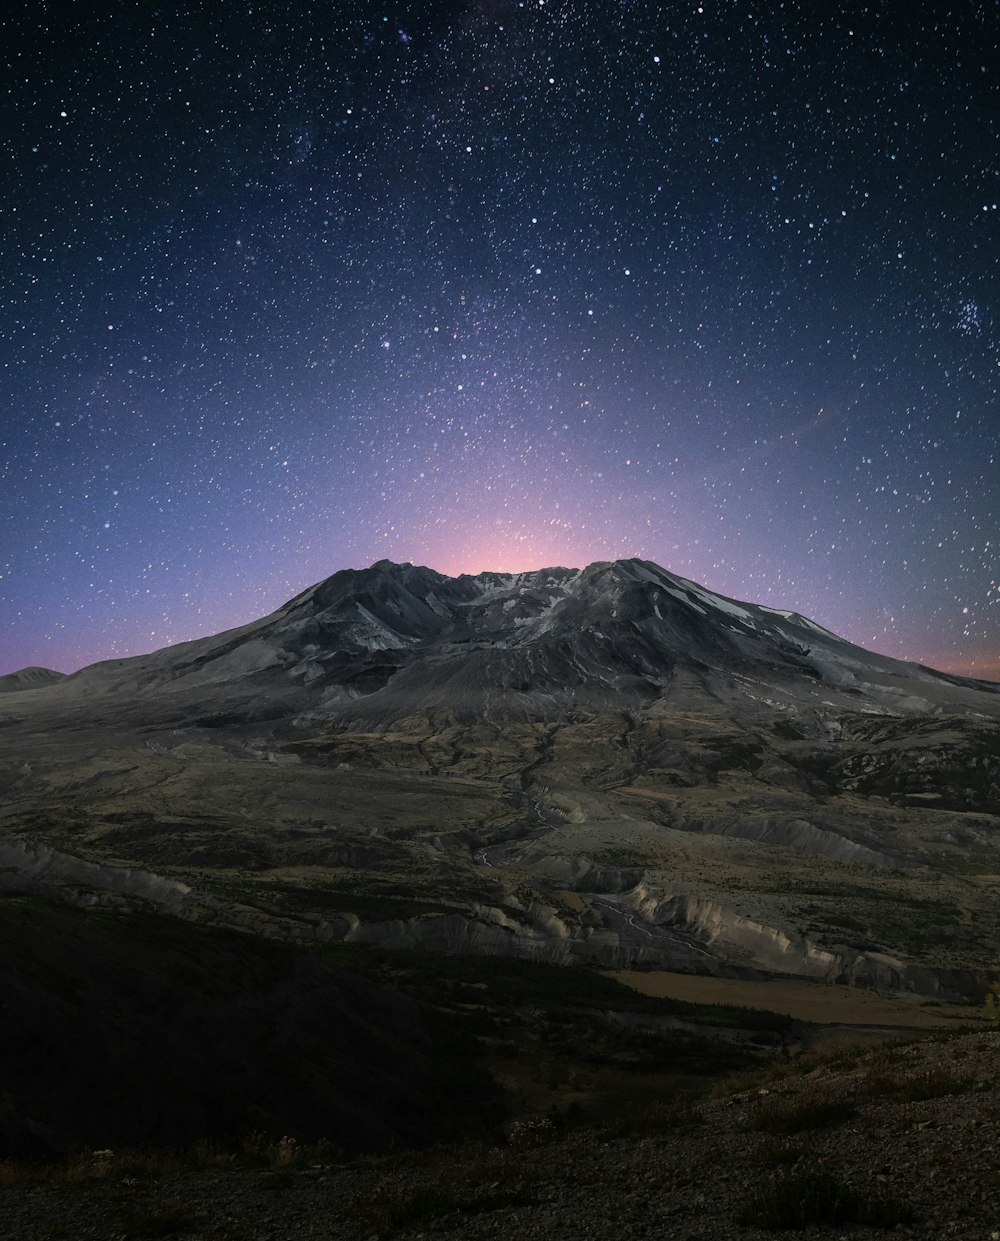 montagna innevata durante la notte con le stelle